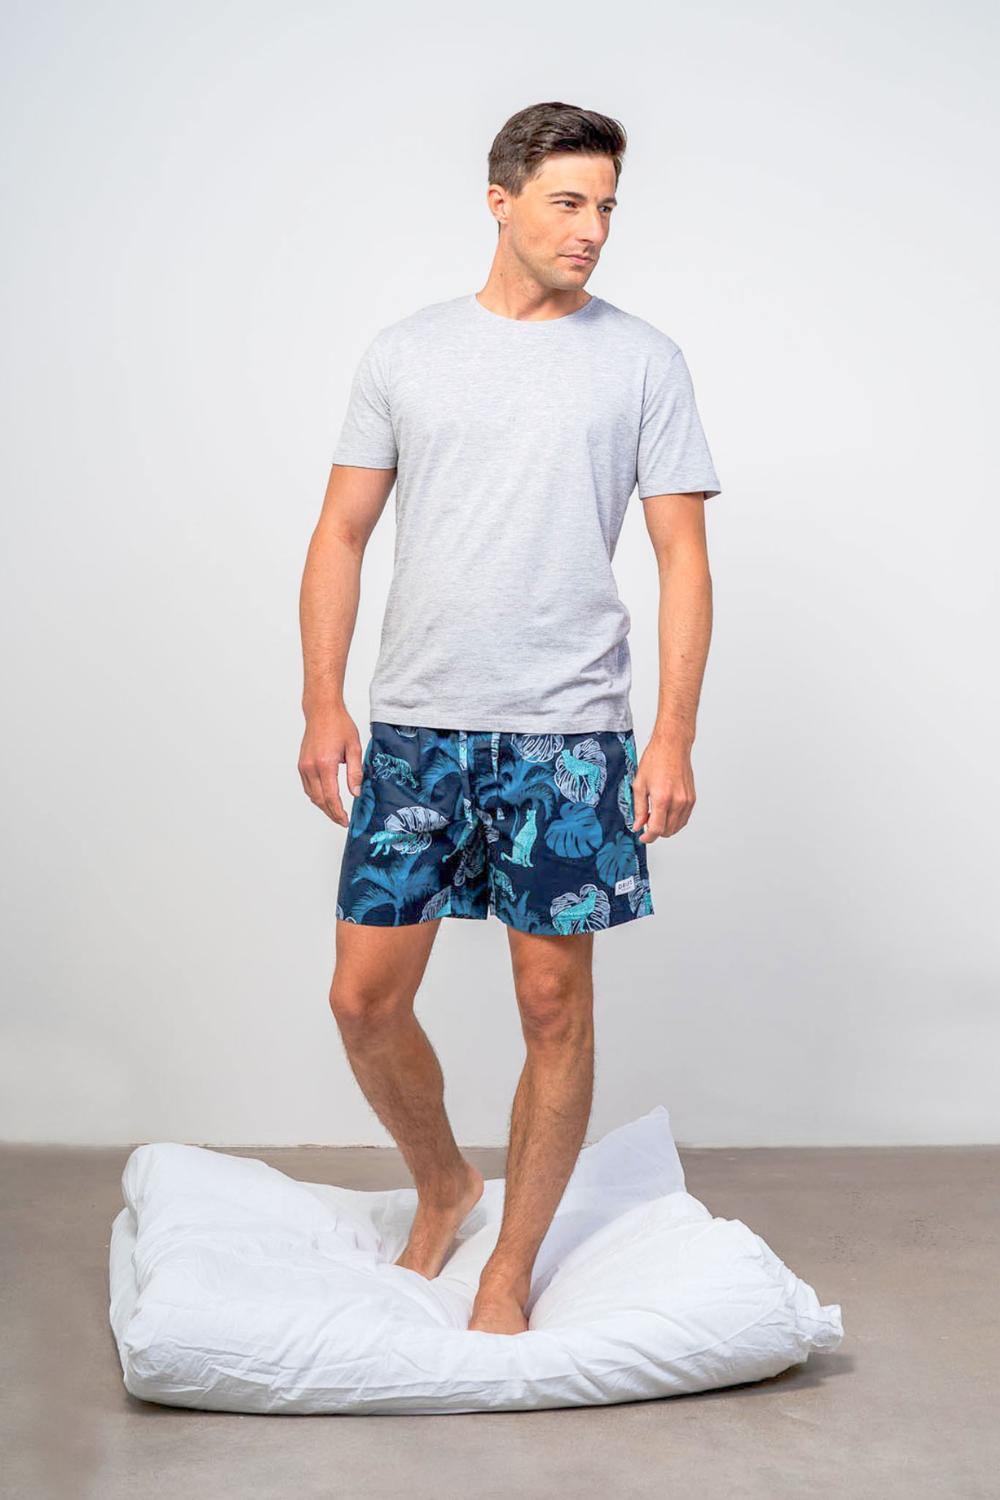 Mens Loungewear PJ Shorts Sets  Cotton Nightwear For Men – Drift Sleepwear